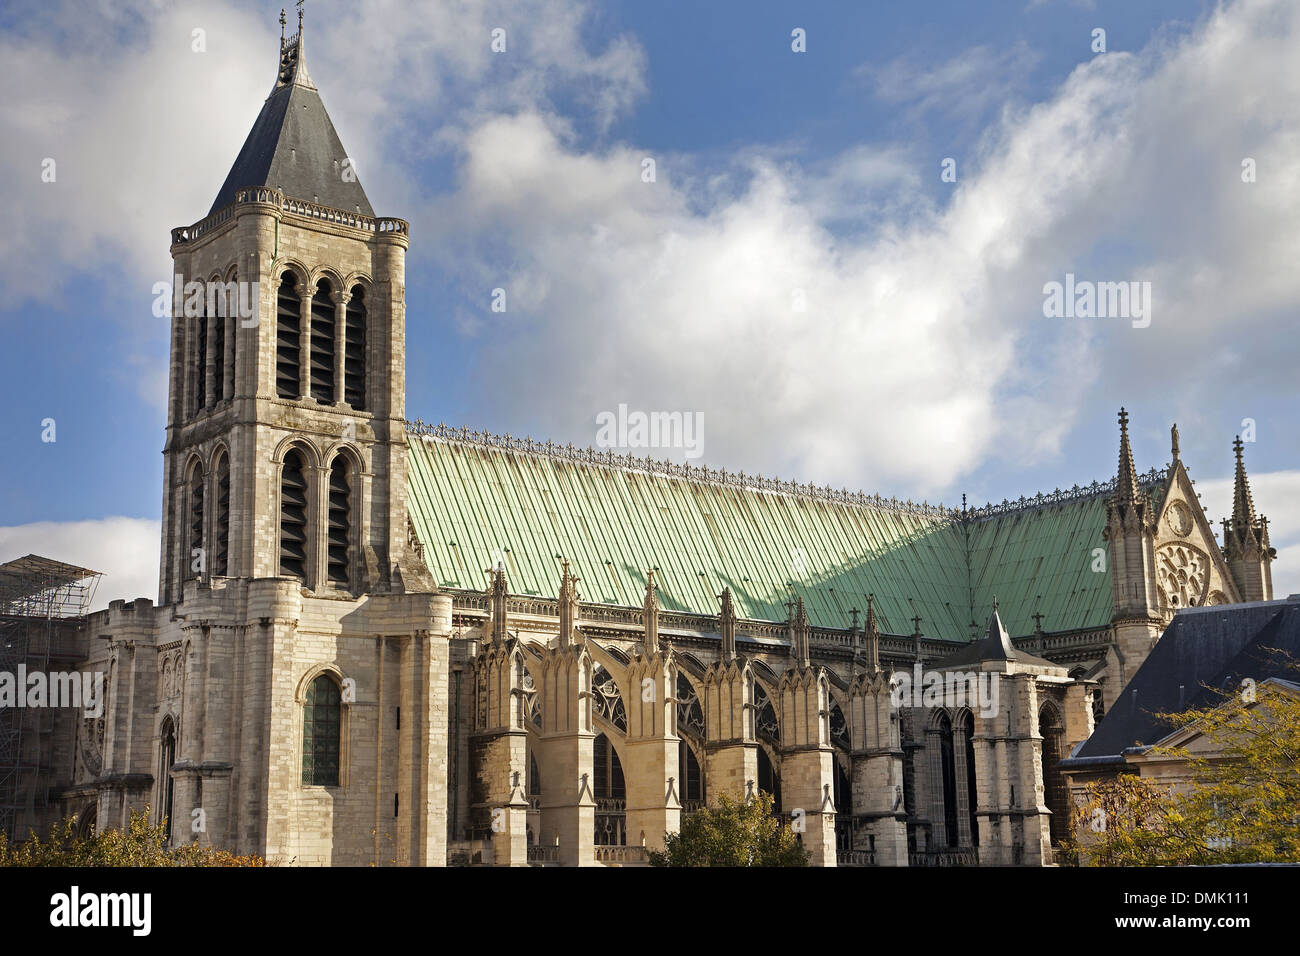 BASILICA DI SAINT DENIS, edificio religioso in stile gotico ricostruito nel XII secolo dall'ABATE SUGER, cimitero per il re di Francia, catalogato come monumento storico di SAINT-DENIS, SEINE-SAINT-DENIS (93), Francia Foto Stock